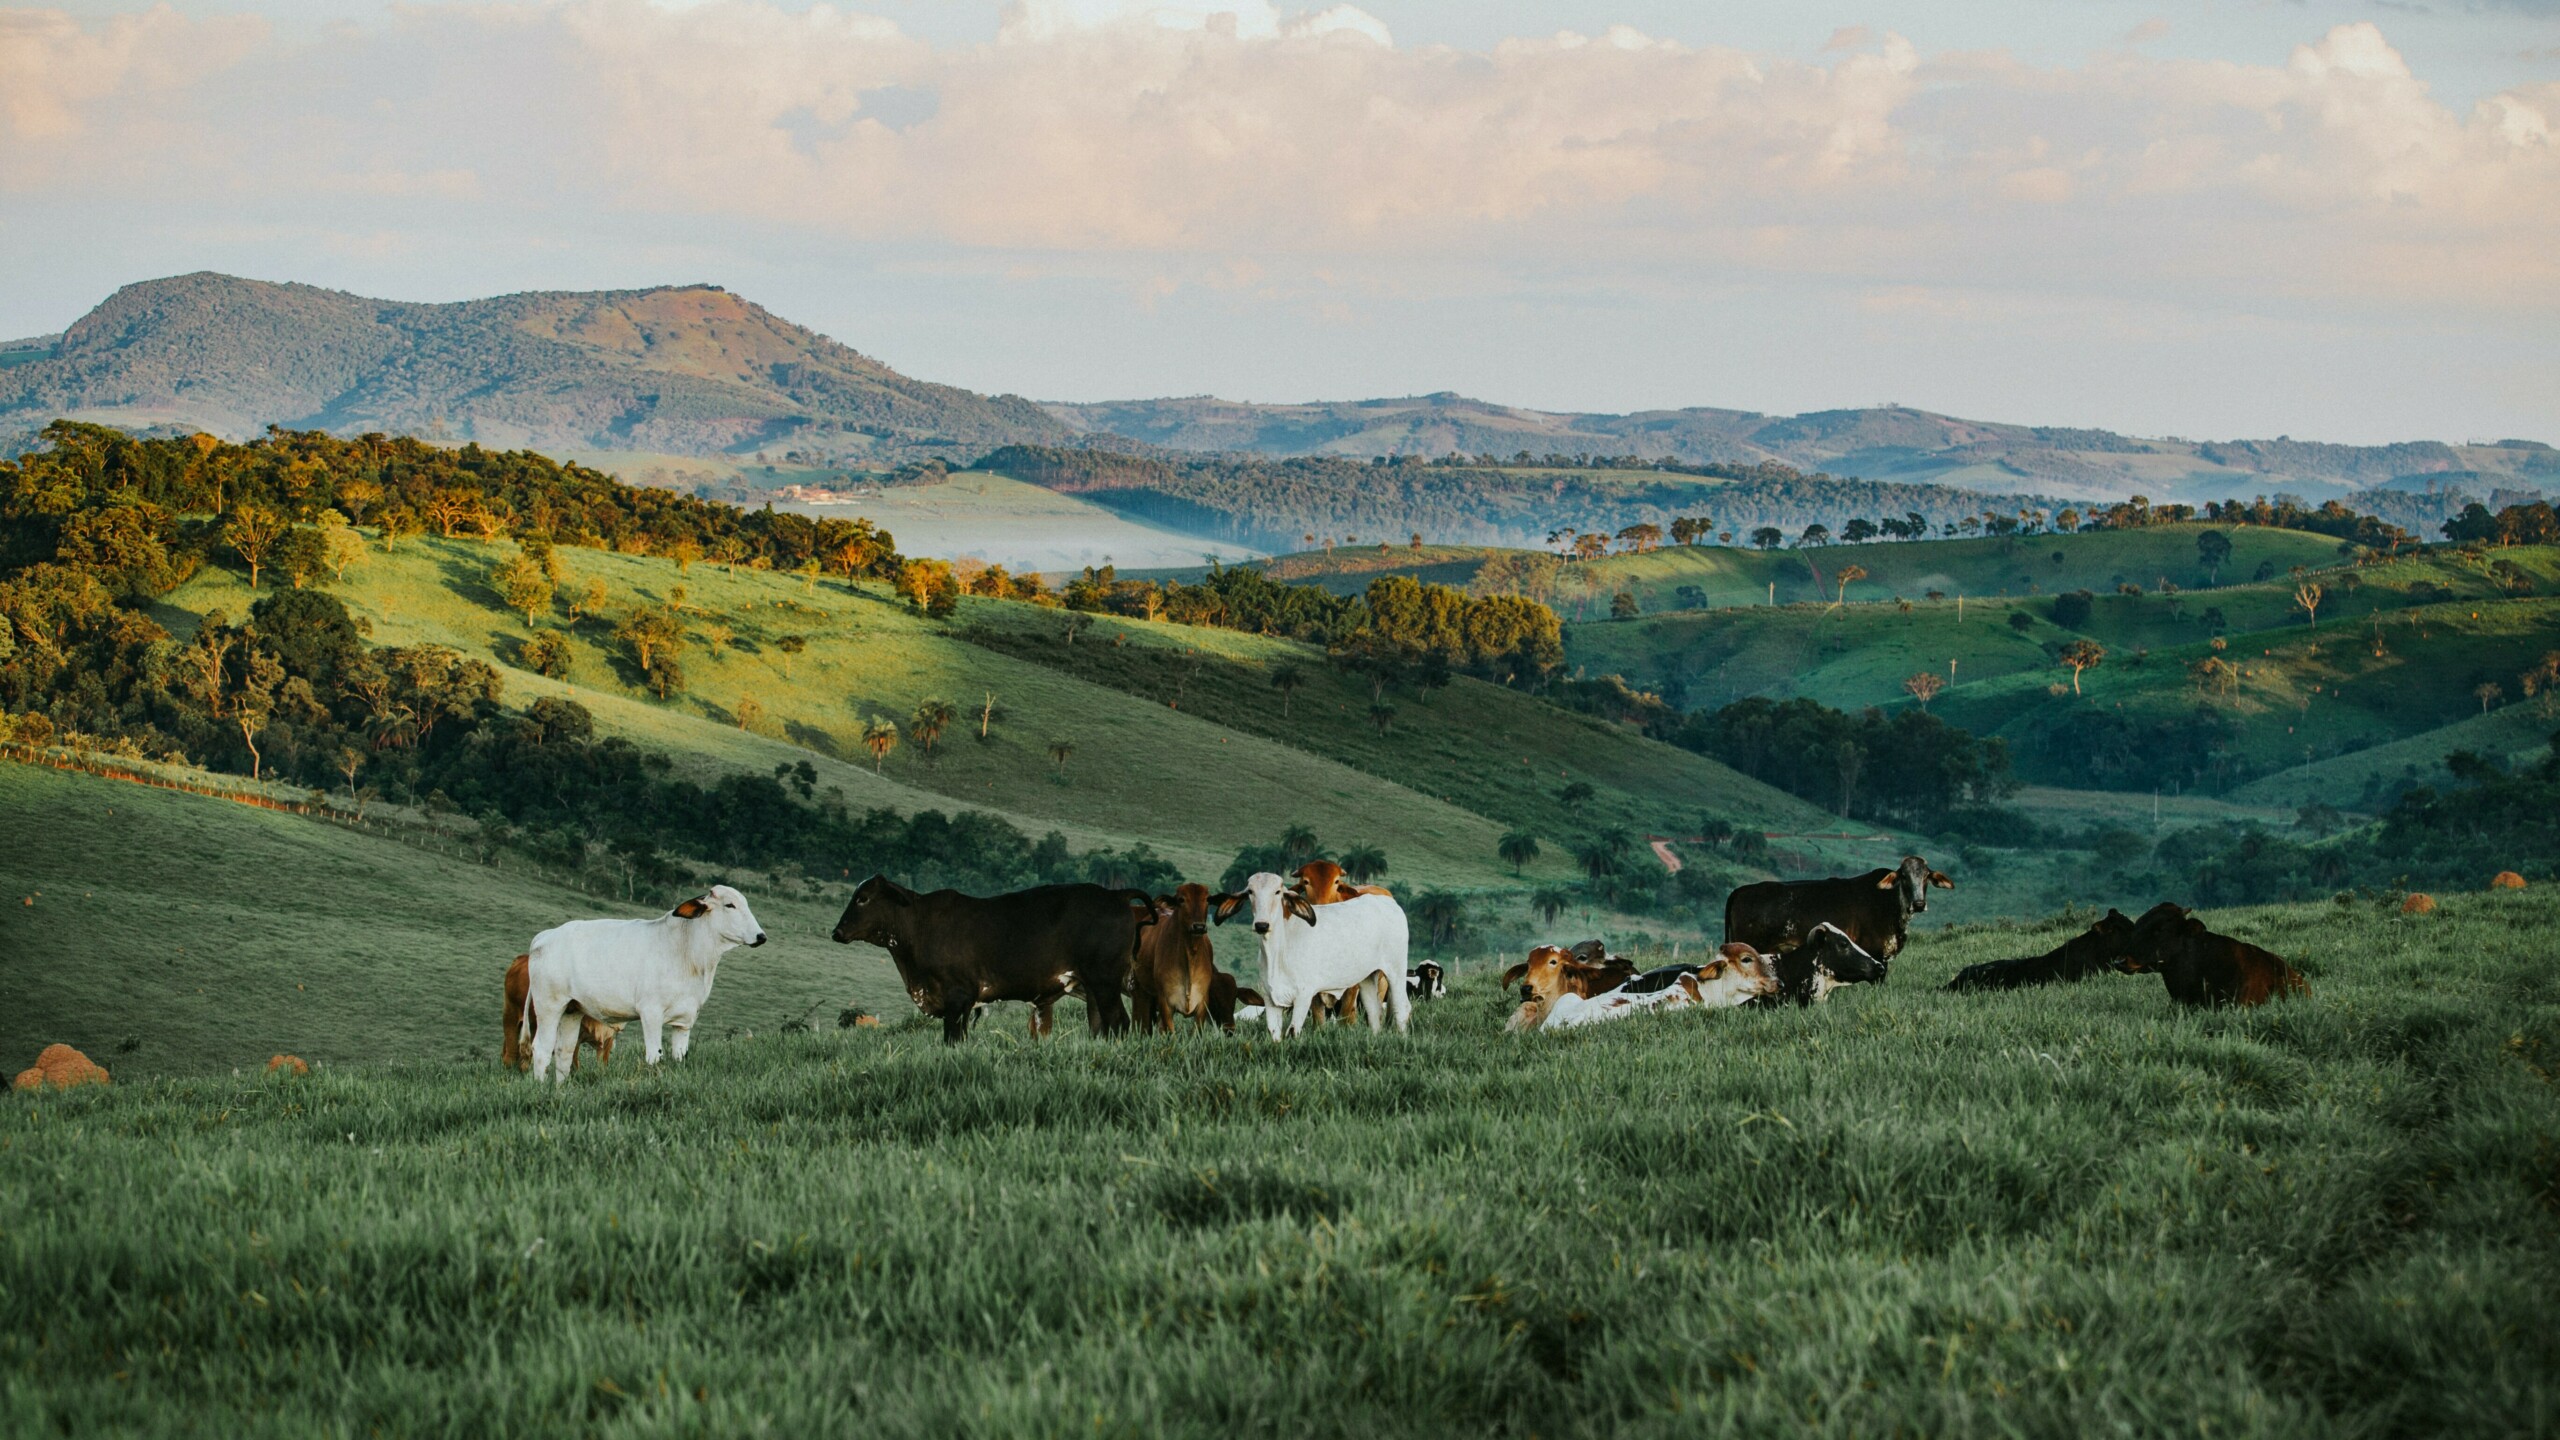 Karjatuotantoa vuoristoisella alueella